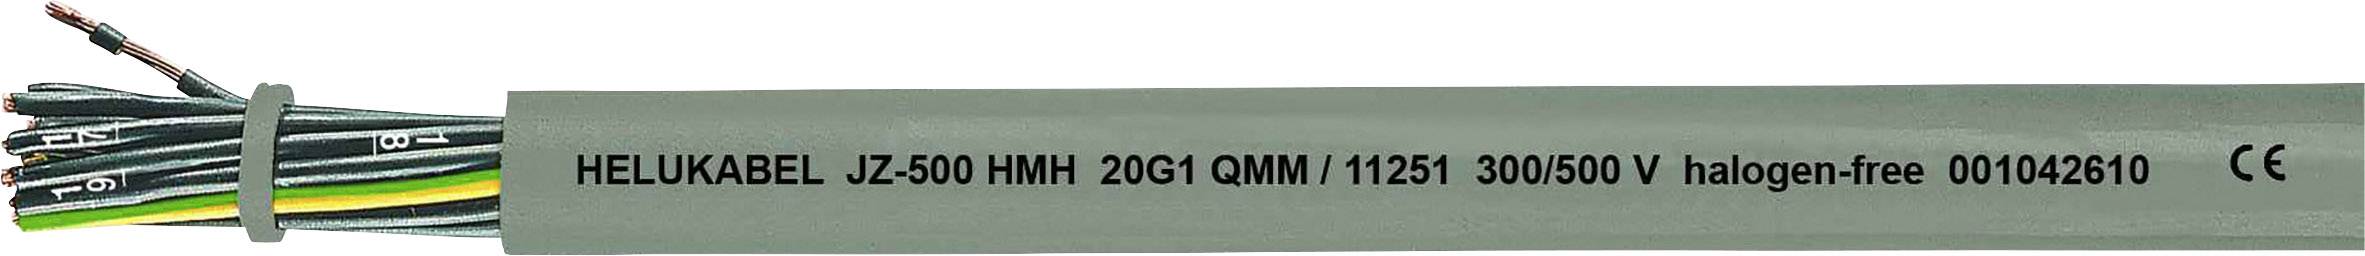 HELUKABEL JZ-500 HMH Steuerleitung 3 G 1.50 mm² Grau 11261-1000 1000 m